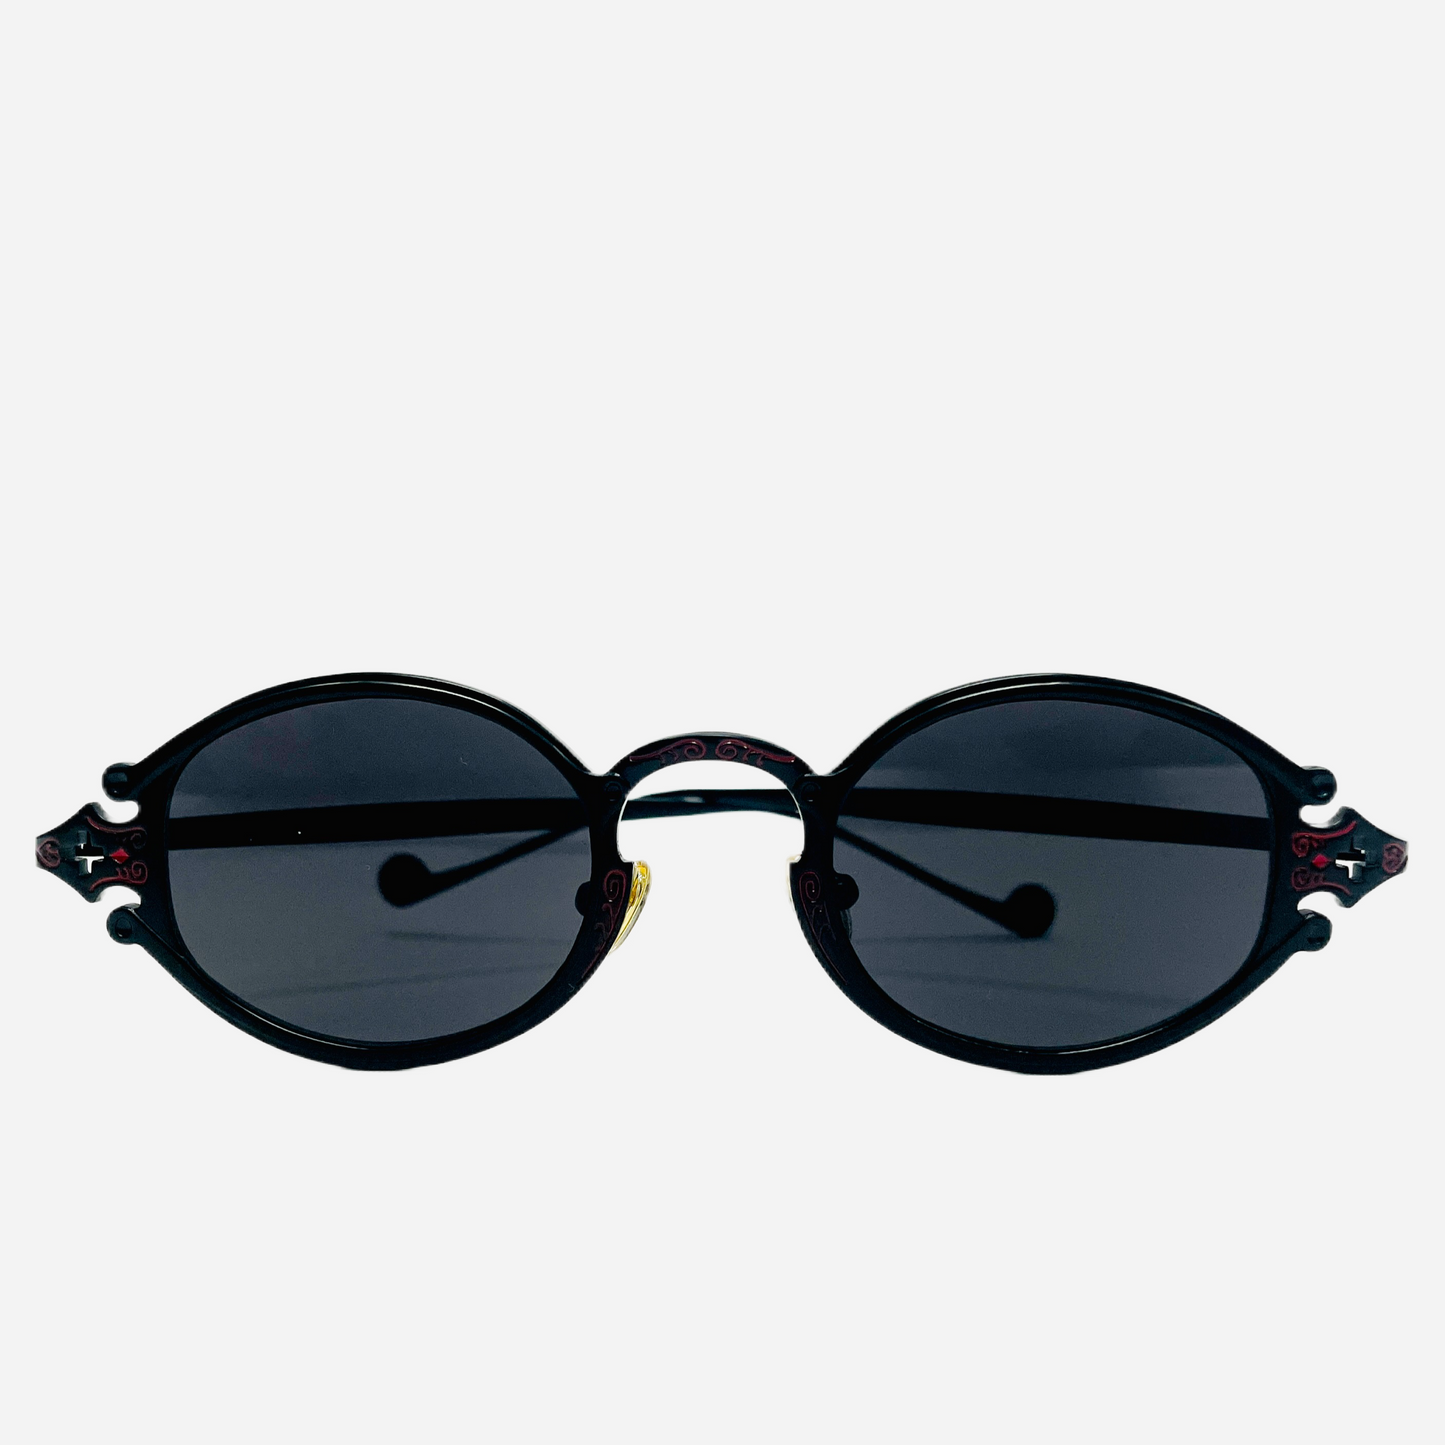 Vintage-Jean-Paul-Gaultier-Sonnenbrille-Sunglasses-Model-56-0001-black